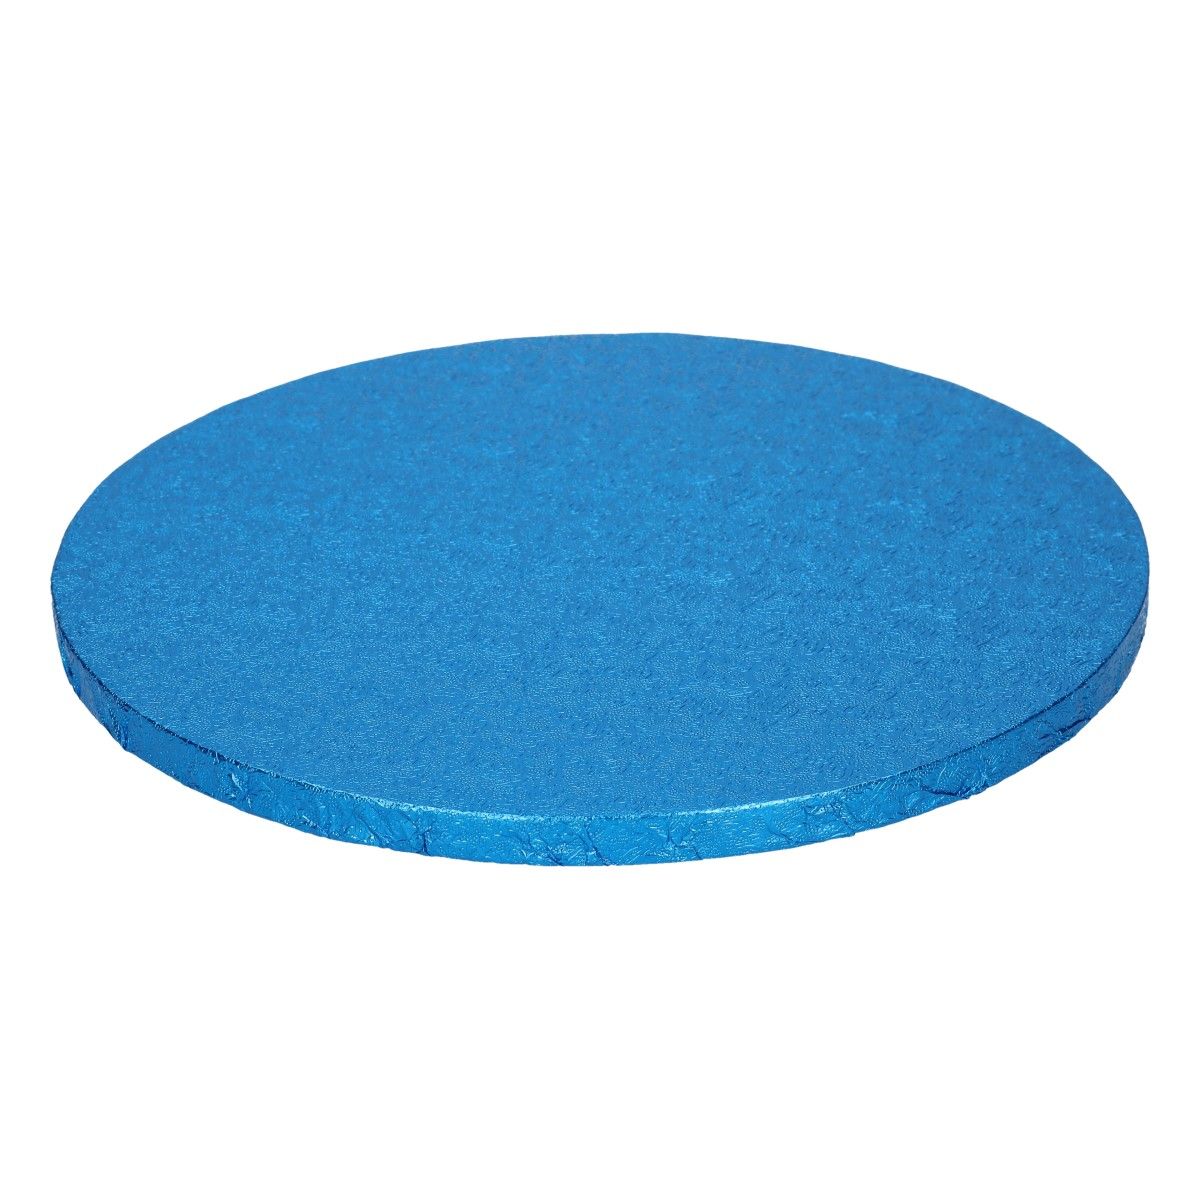 Podnos modrý (Blue) hrubý O 30,5 cm, FunCakes, F80905